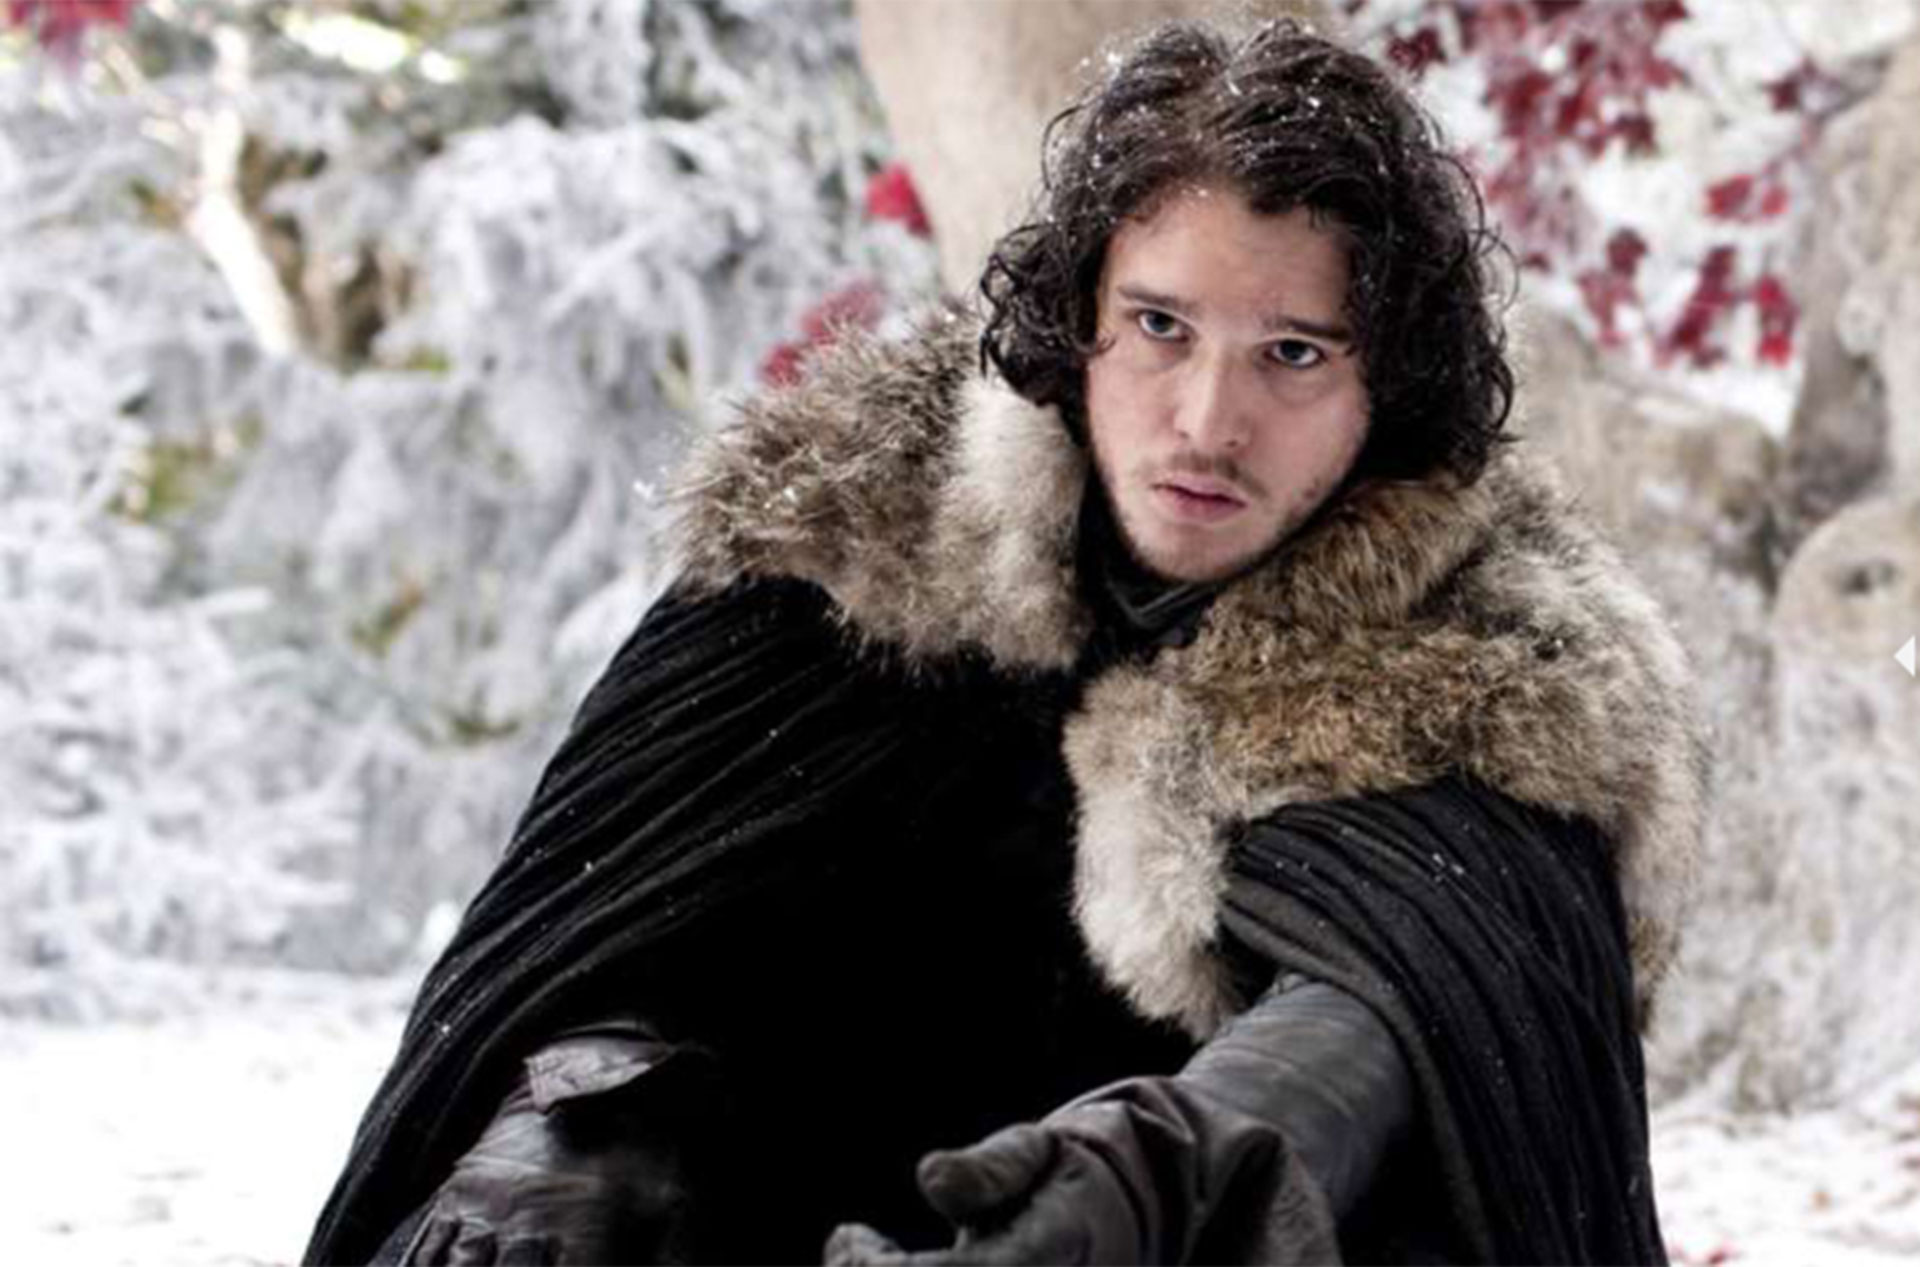 Un joven Jon Snow se presentaba en la serie "Game of Thrones", pero luego fue creciendo en fuerza y se convirtió en un personaje central de la historia. (HBO)